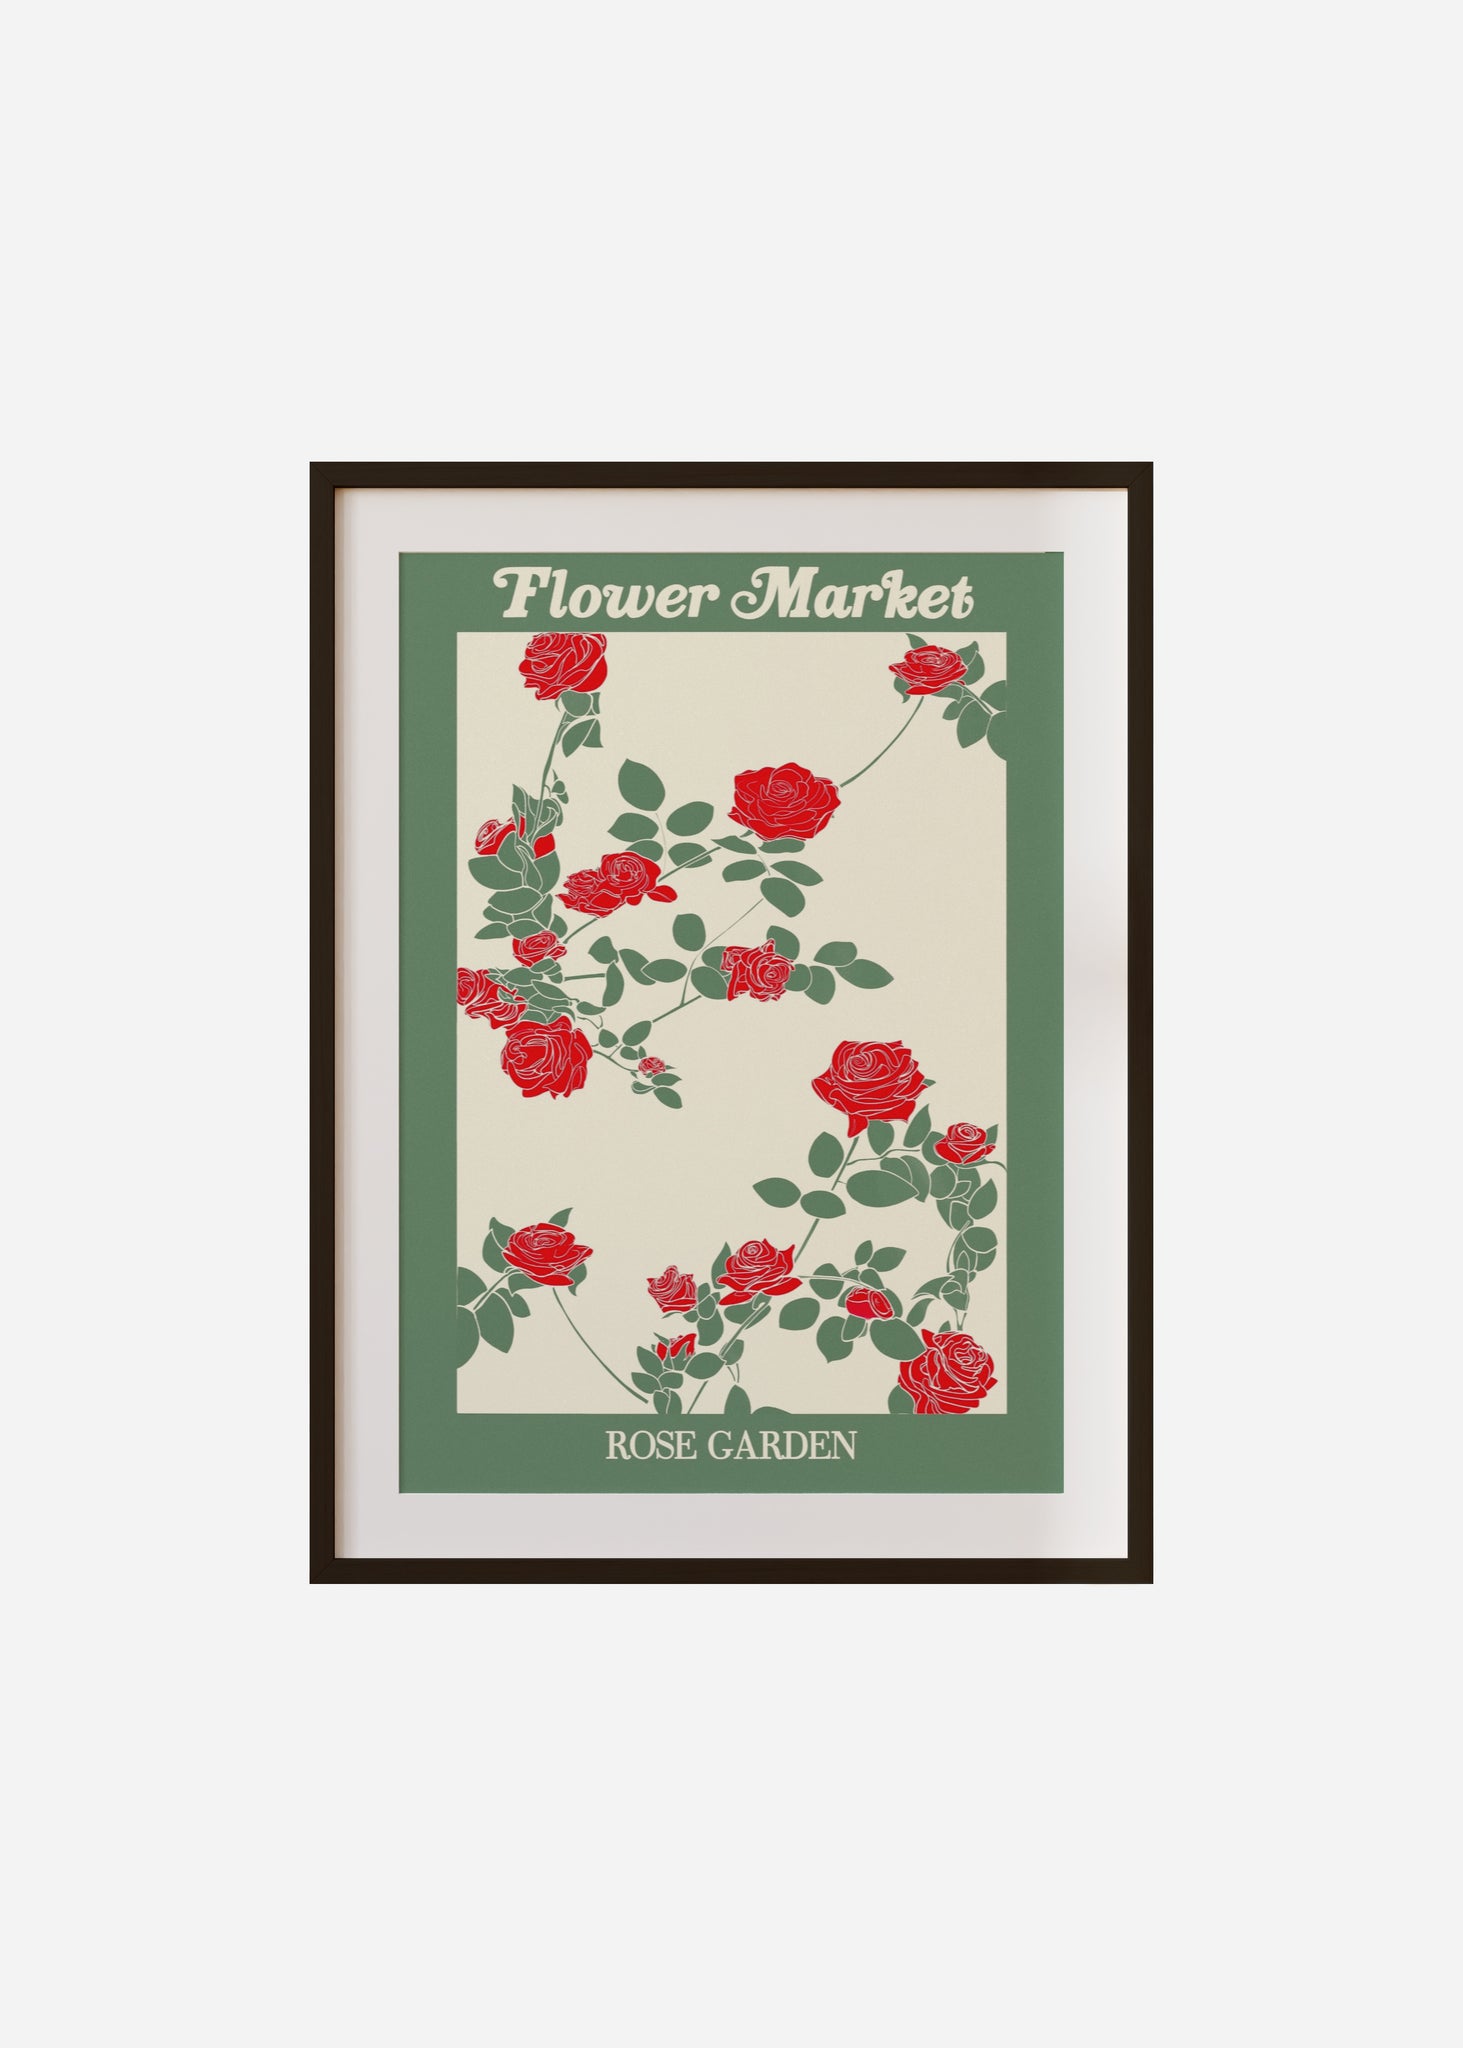 flower market / rose garden Framed & Mounted Print